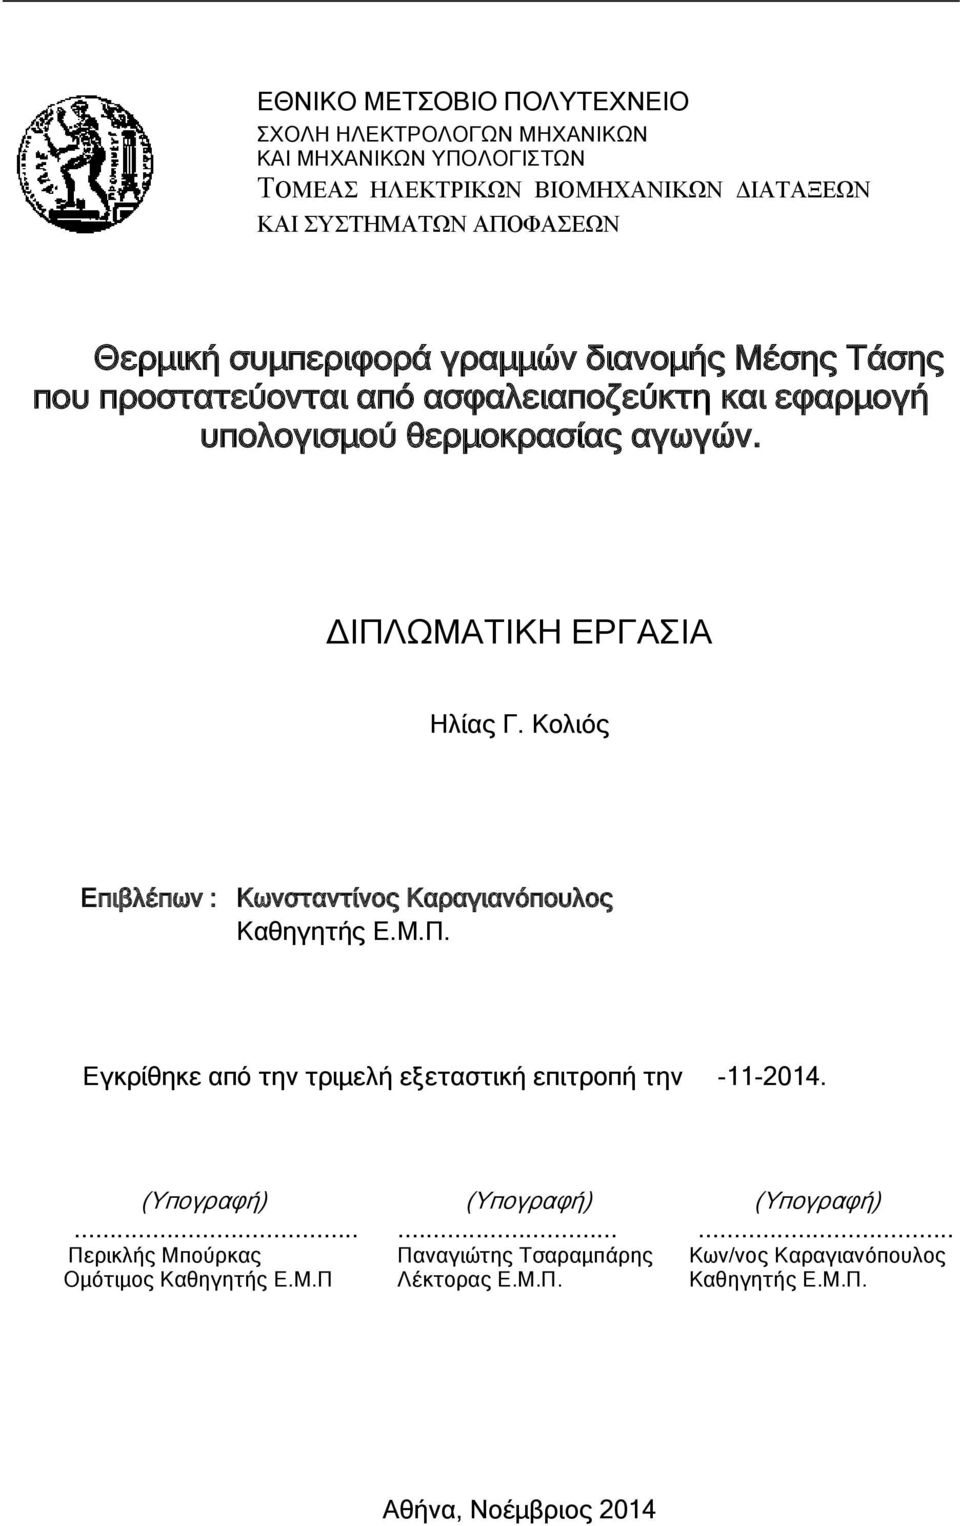 ΔΙΠΛΩΜΑΤΙΚΗ ΕΡΓΑΣΙΑ Ηλίας Γ. Κολιός Επιβλέπων : Κωνσταντίνος Καραγιανόπουλος Καθηγητής Ε.Μ.Π. Εγκρίθηκε από την τριμελή εξεταστική επιτροπή την -11-2014.